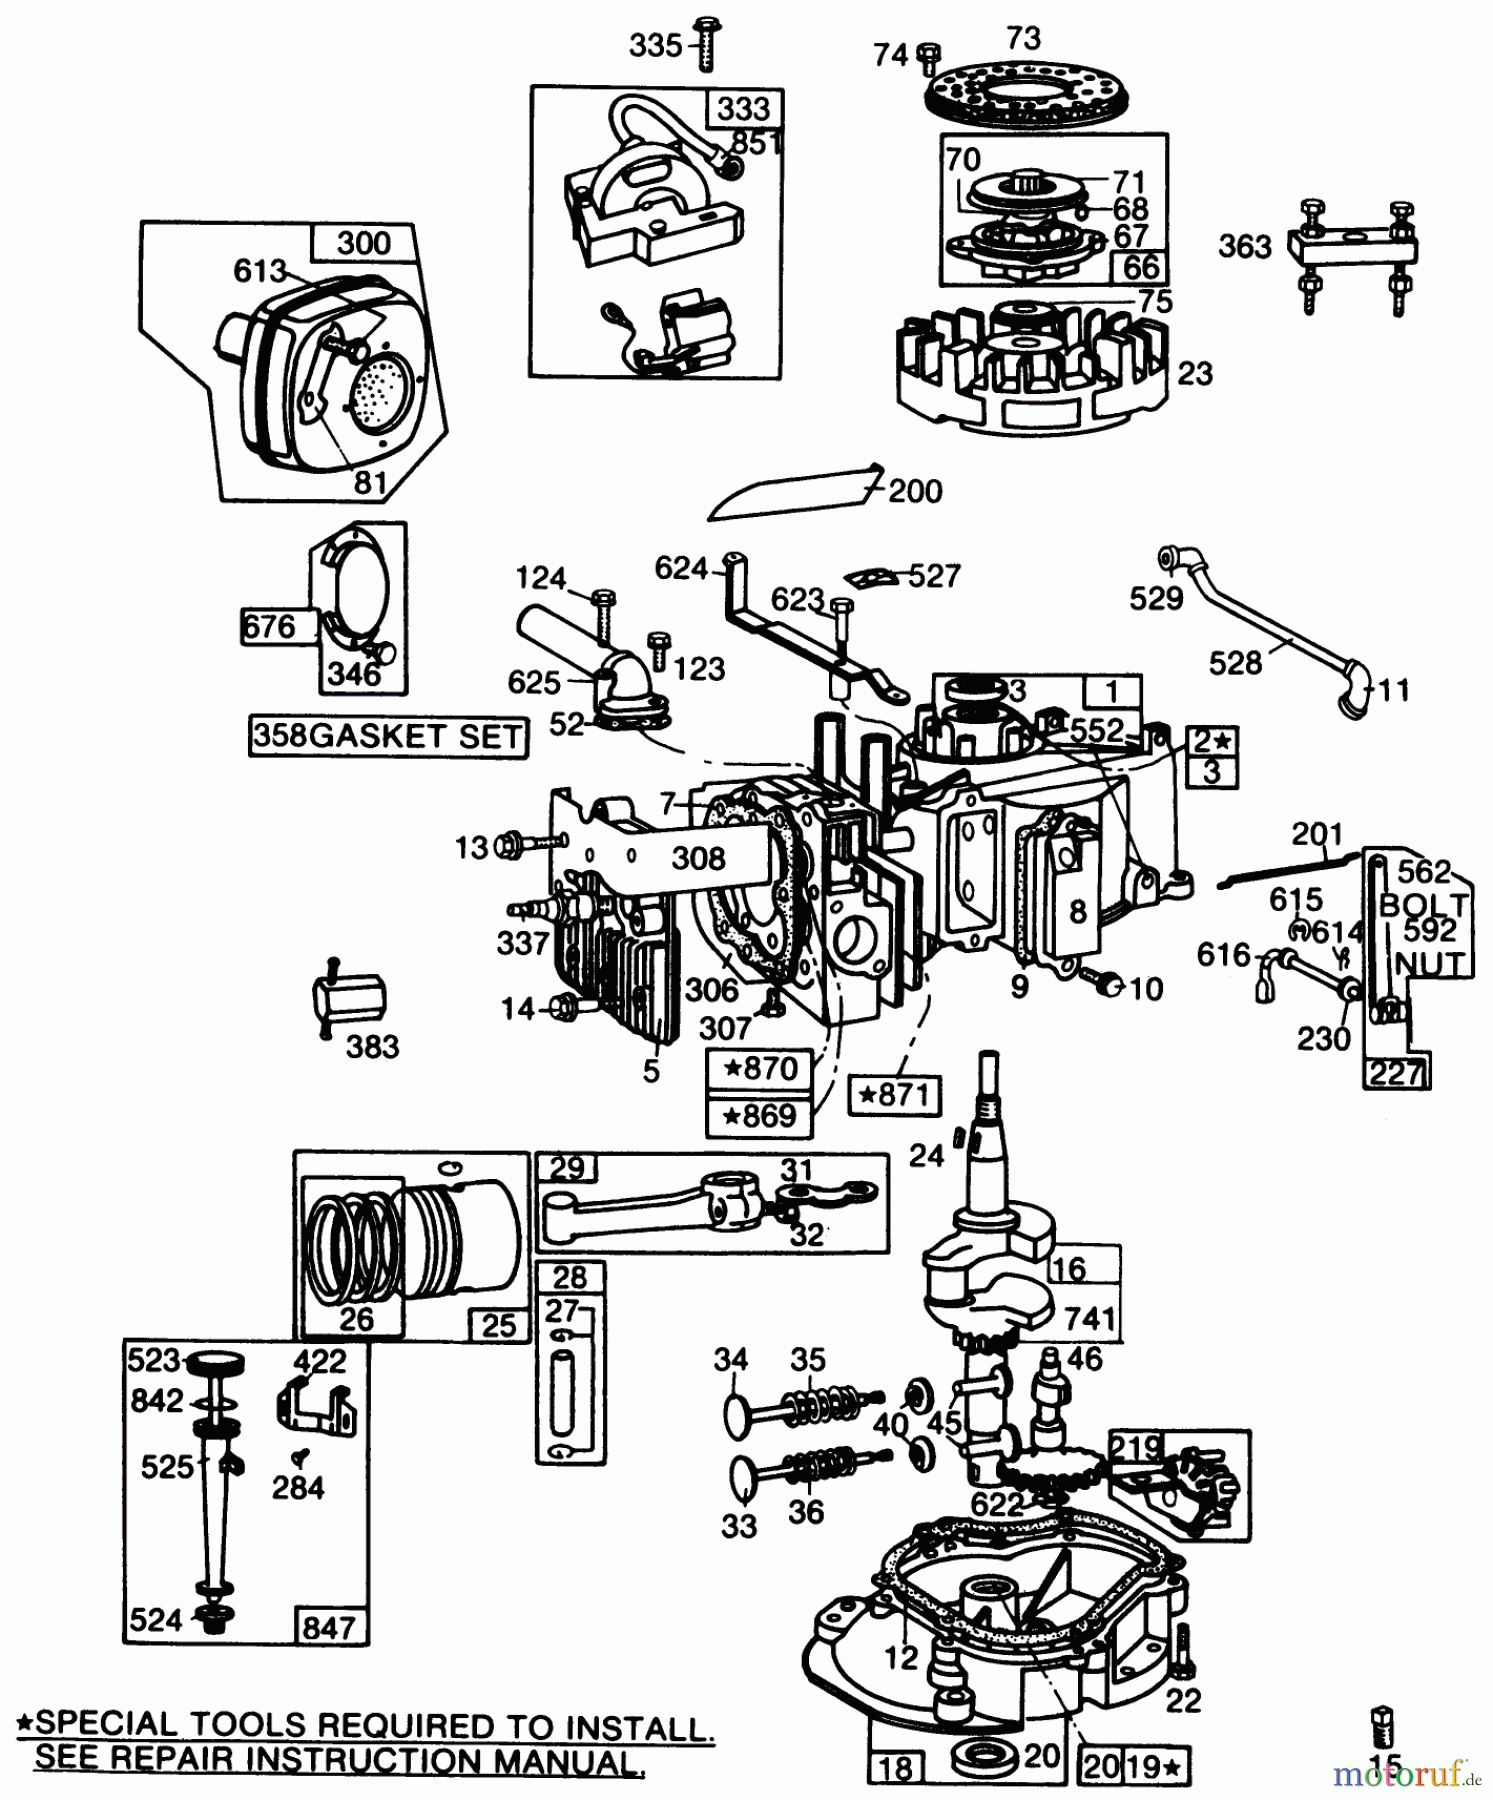  Toro Neu Mowers, Walk-Behind Seite 2 22005 - Toro Lawnmower, 1988 (8000001-8999999) ENGINE BRIGGS & STRATTON MODEL NO. 130902 TYPE 1200-01 #1